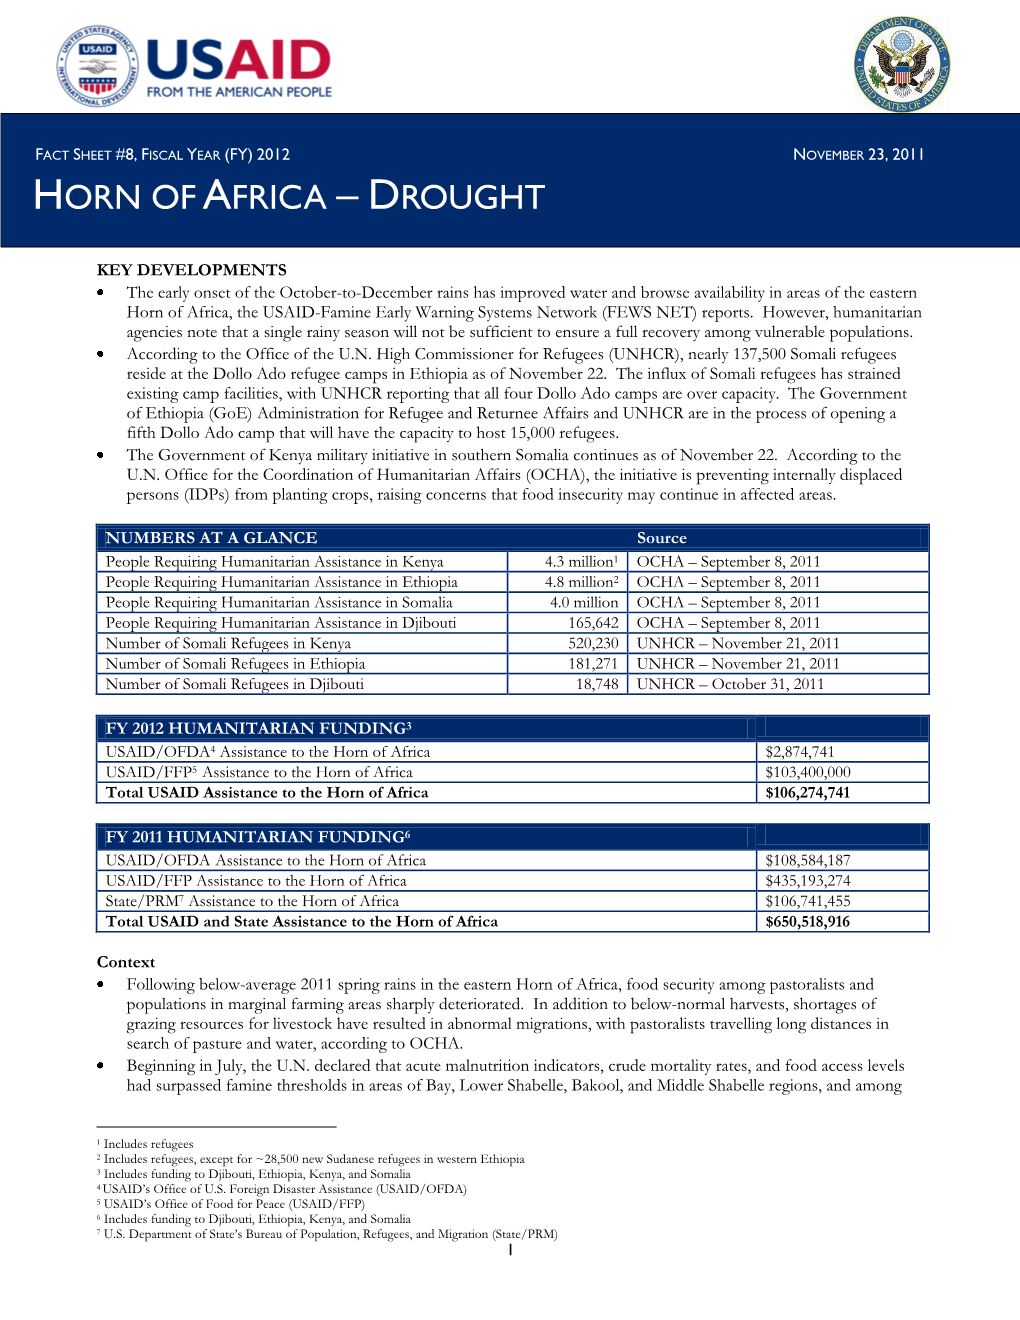 USG Horn of Africa Drought Fact Sheet #8